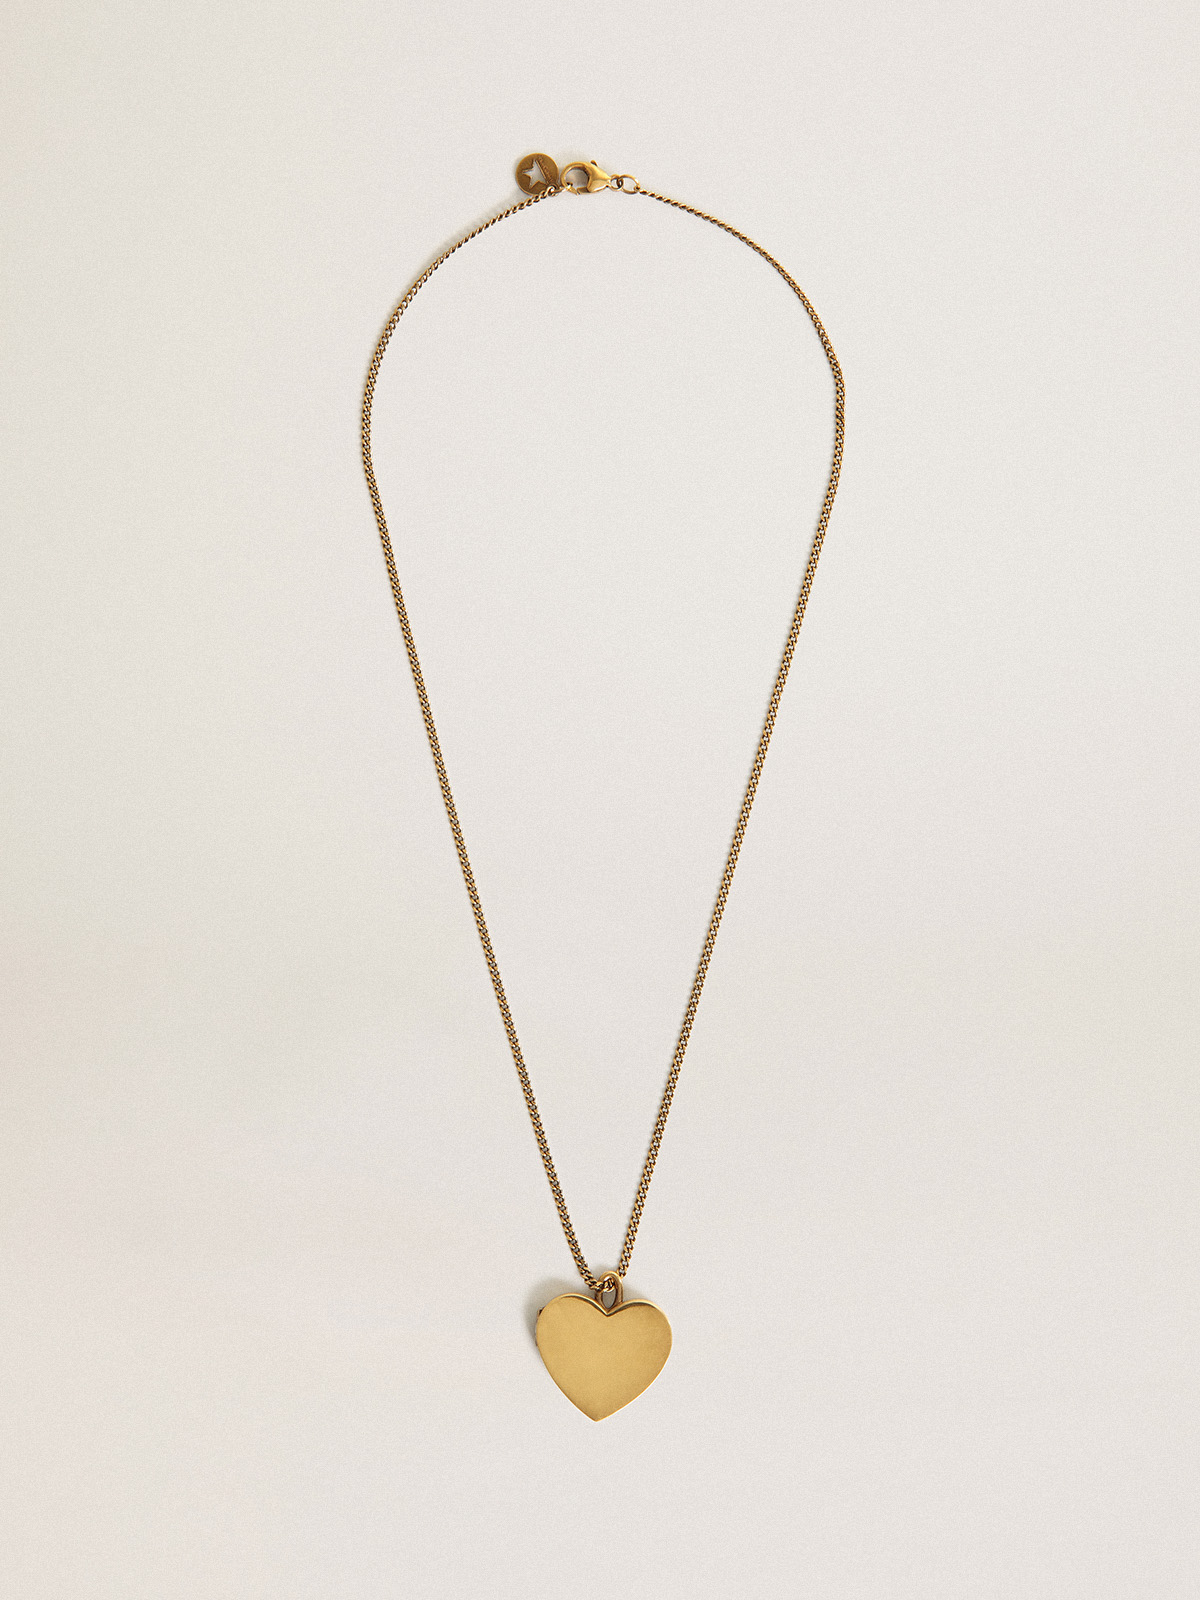 color oro antiguo con con forma de corazón |